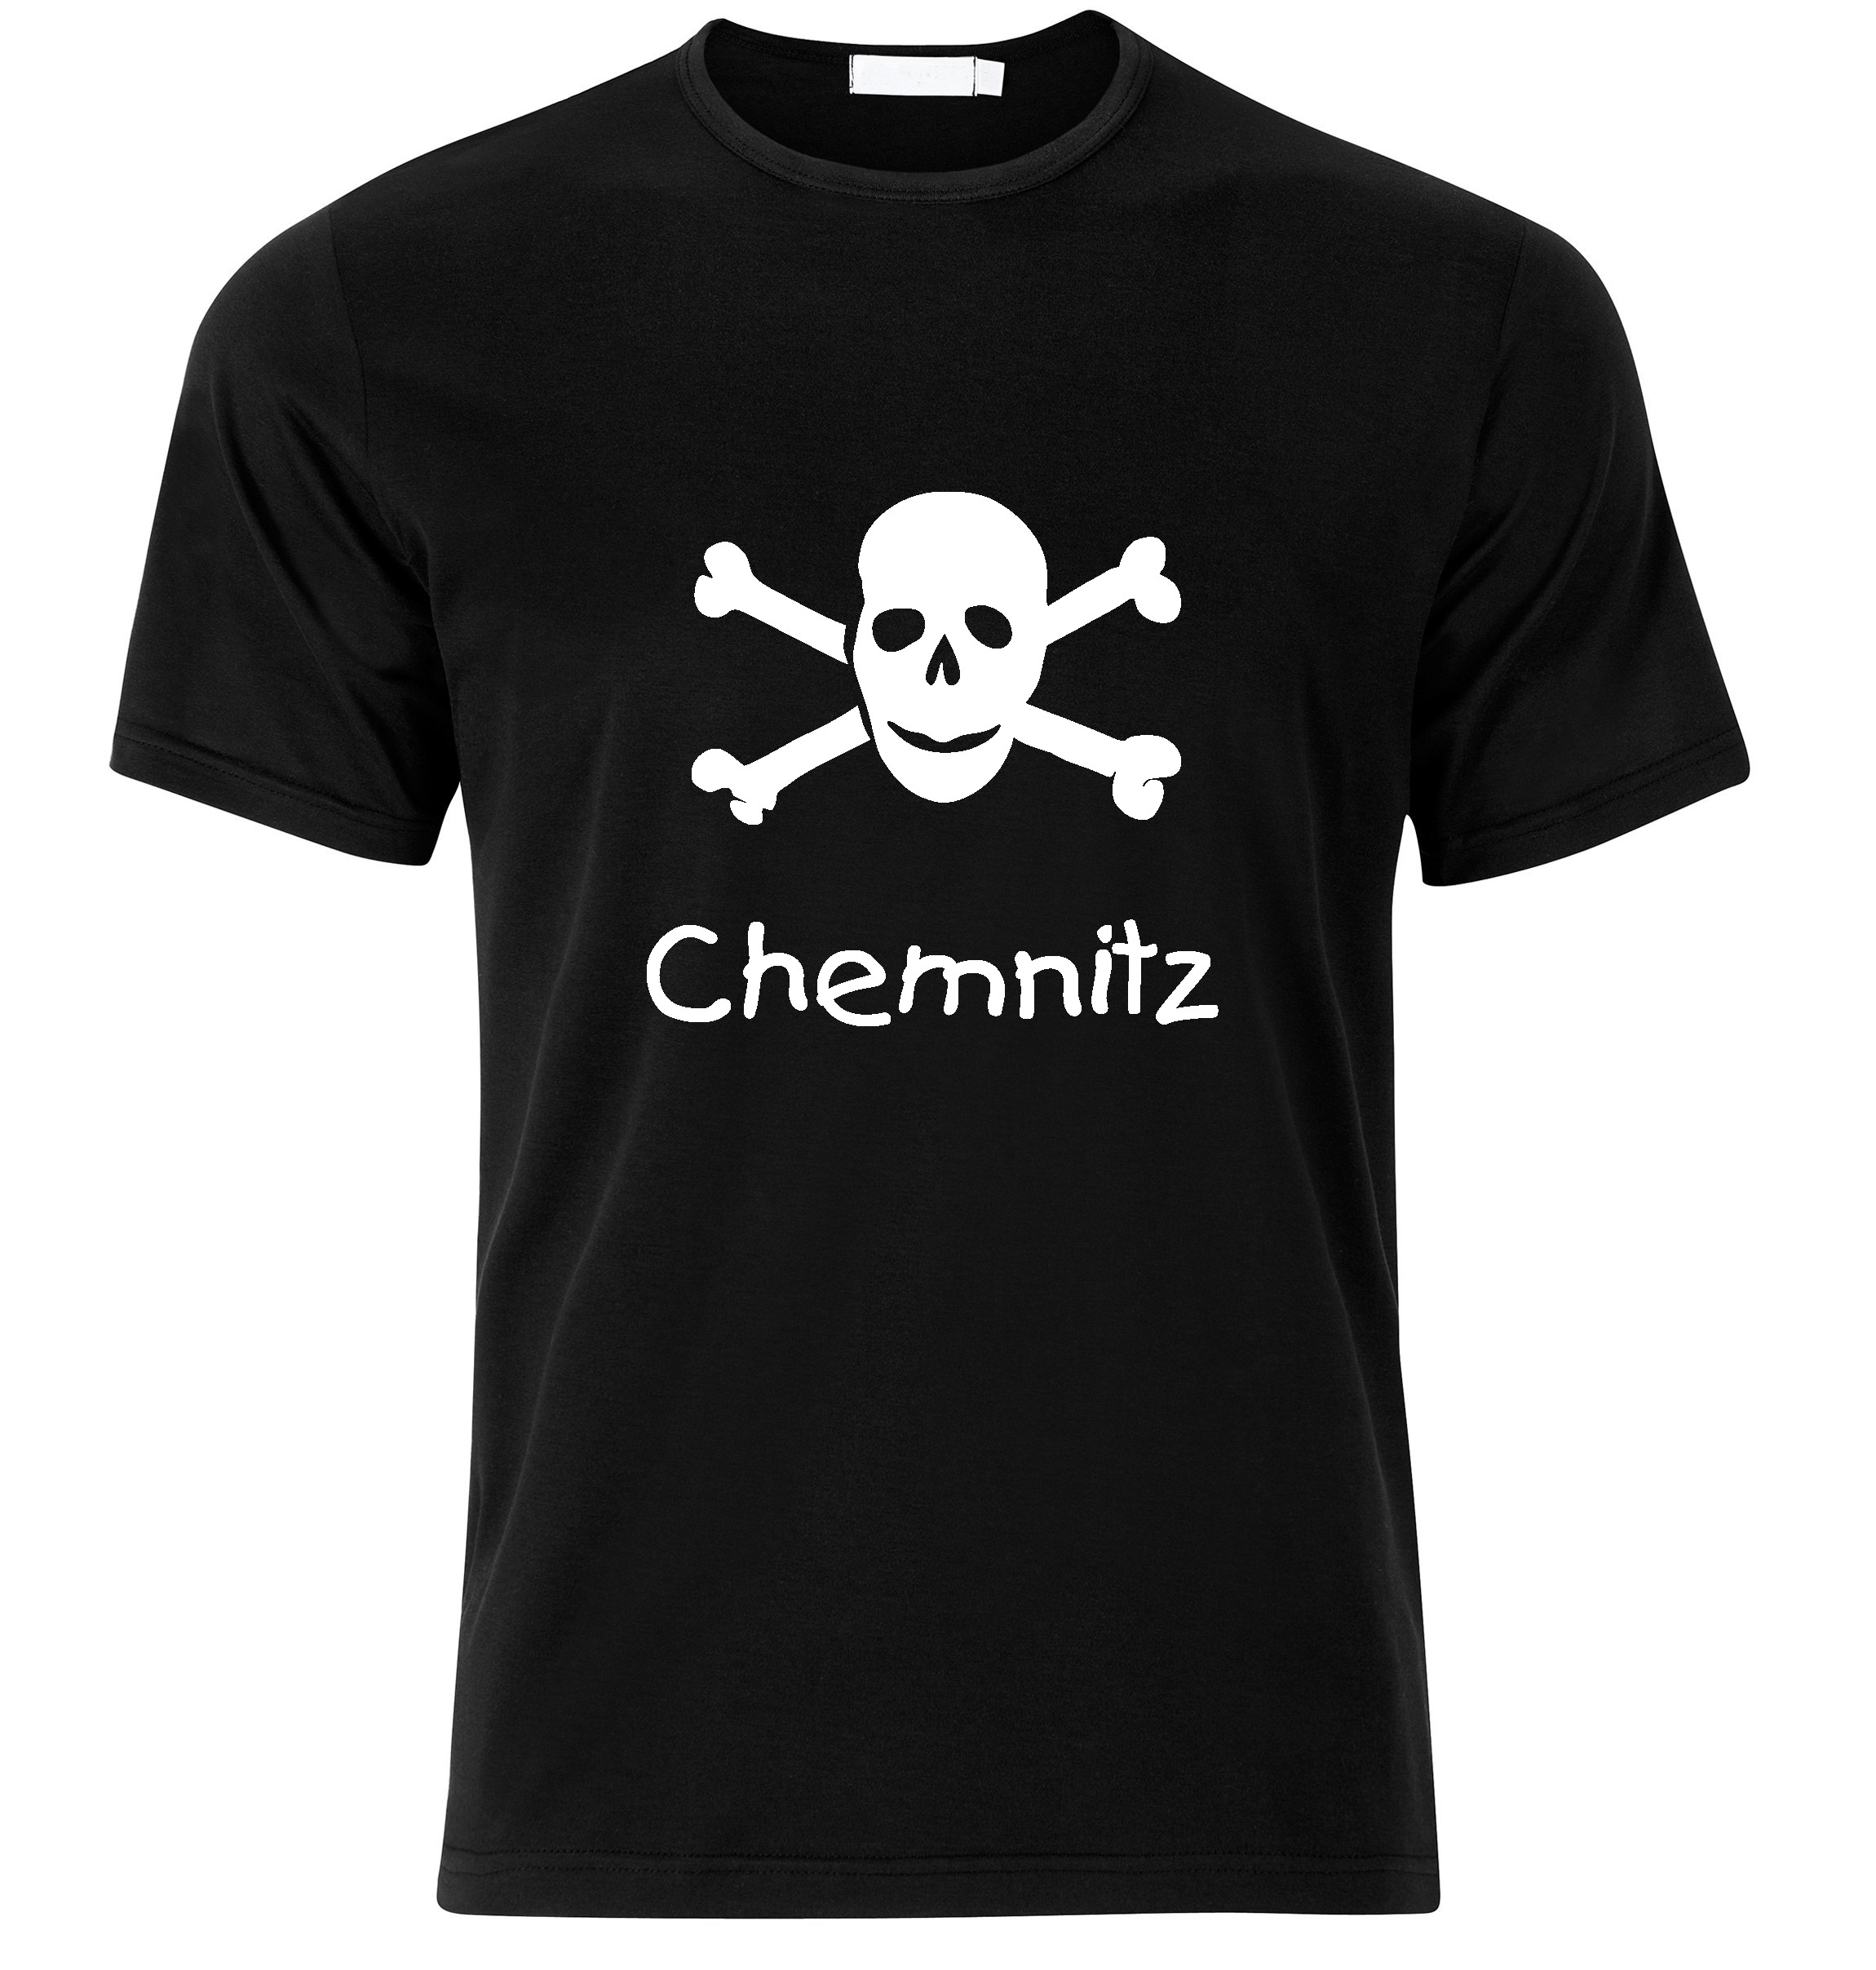 T-Shirt Chemnitz Jolly Roger, Totenkopf